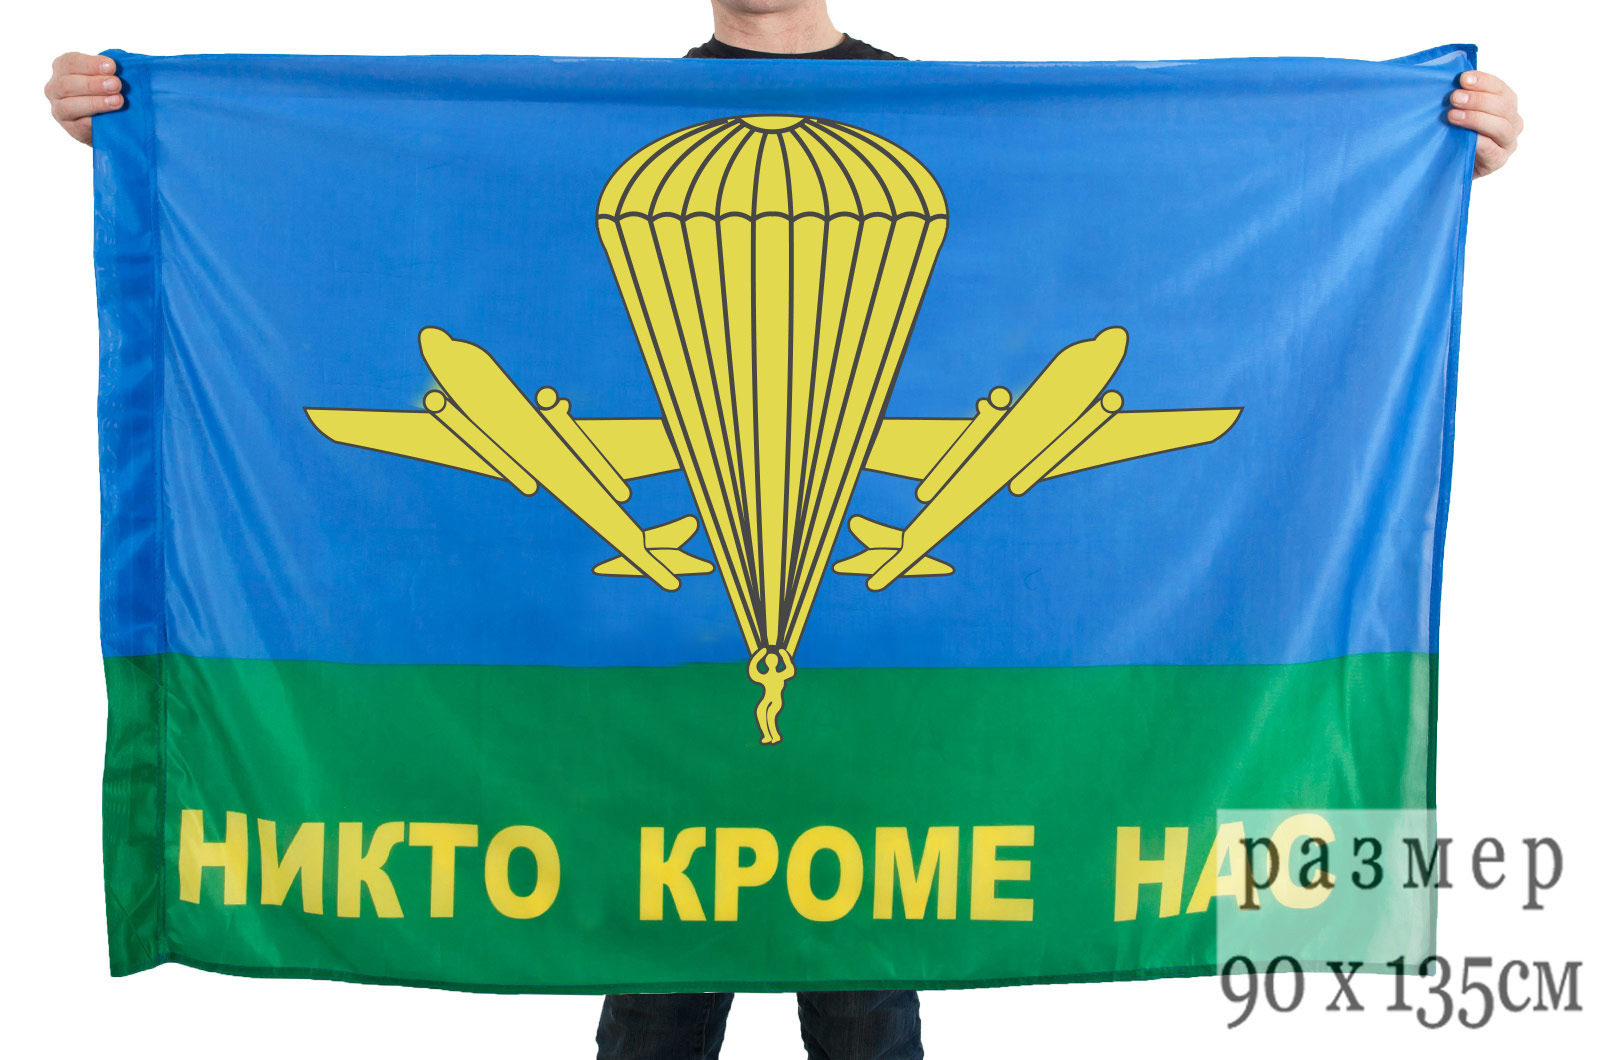 Купить флаг ВДВ РФ "Никто кроме нас" выгодно в Военпро